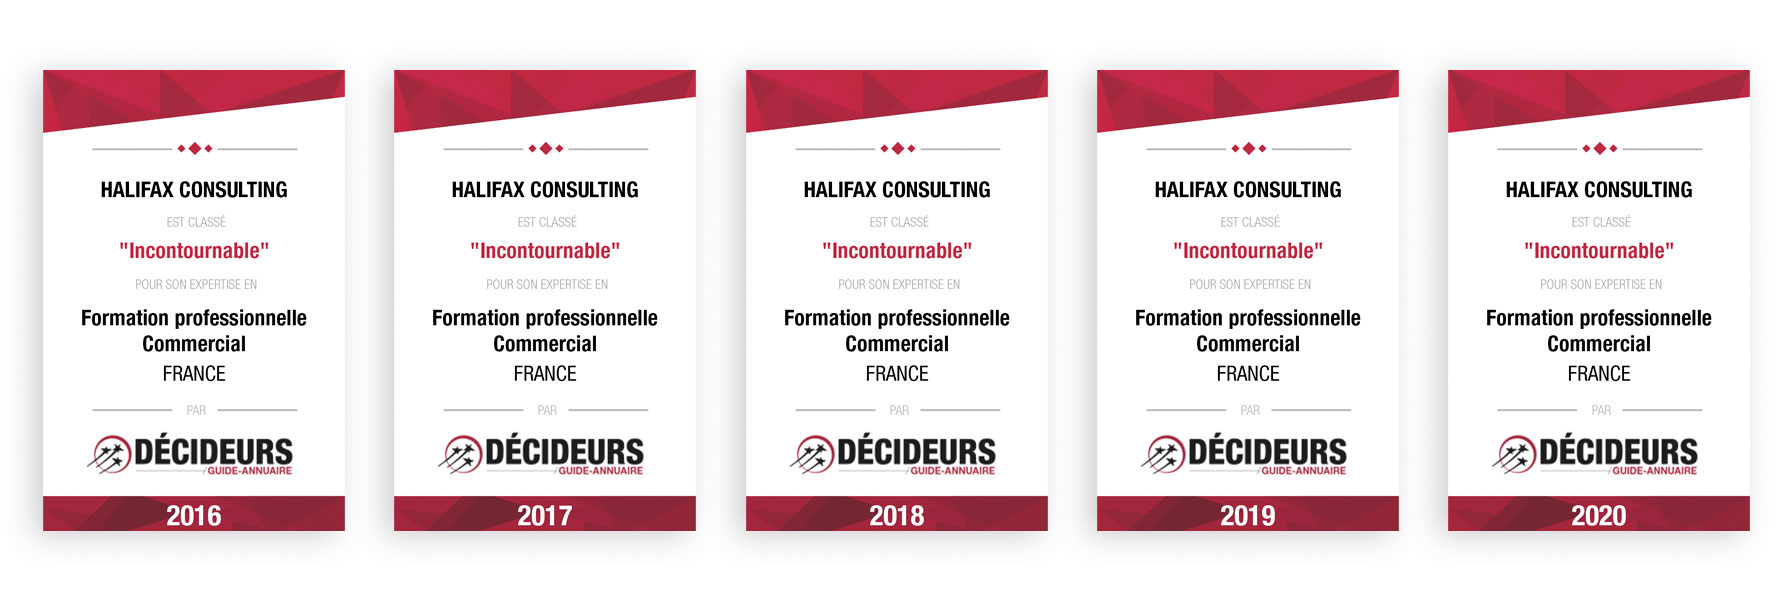 Halifax Consulting, qualifié 